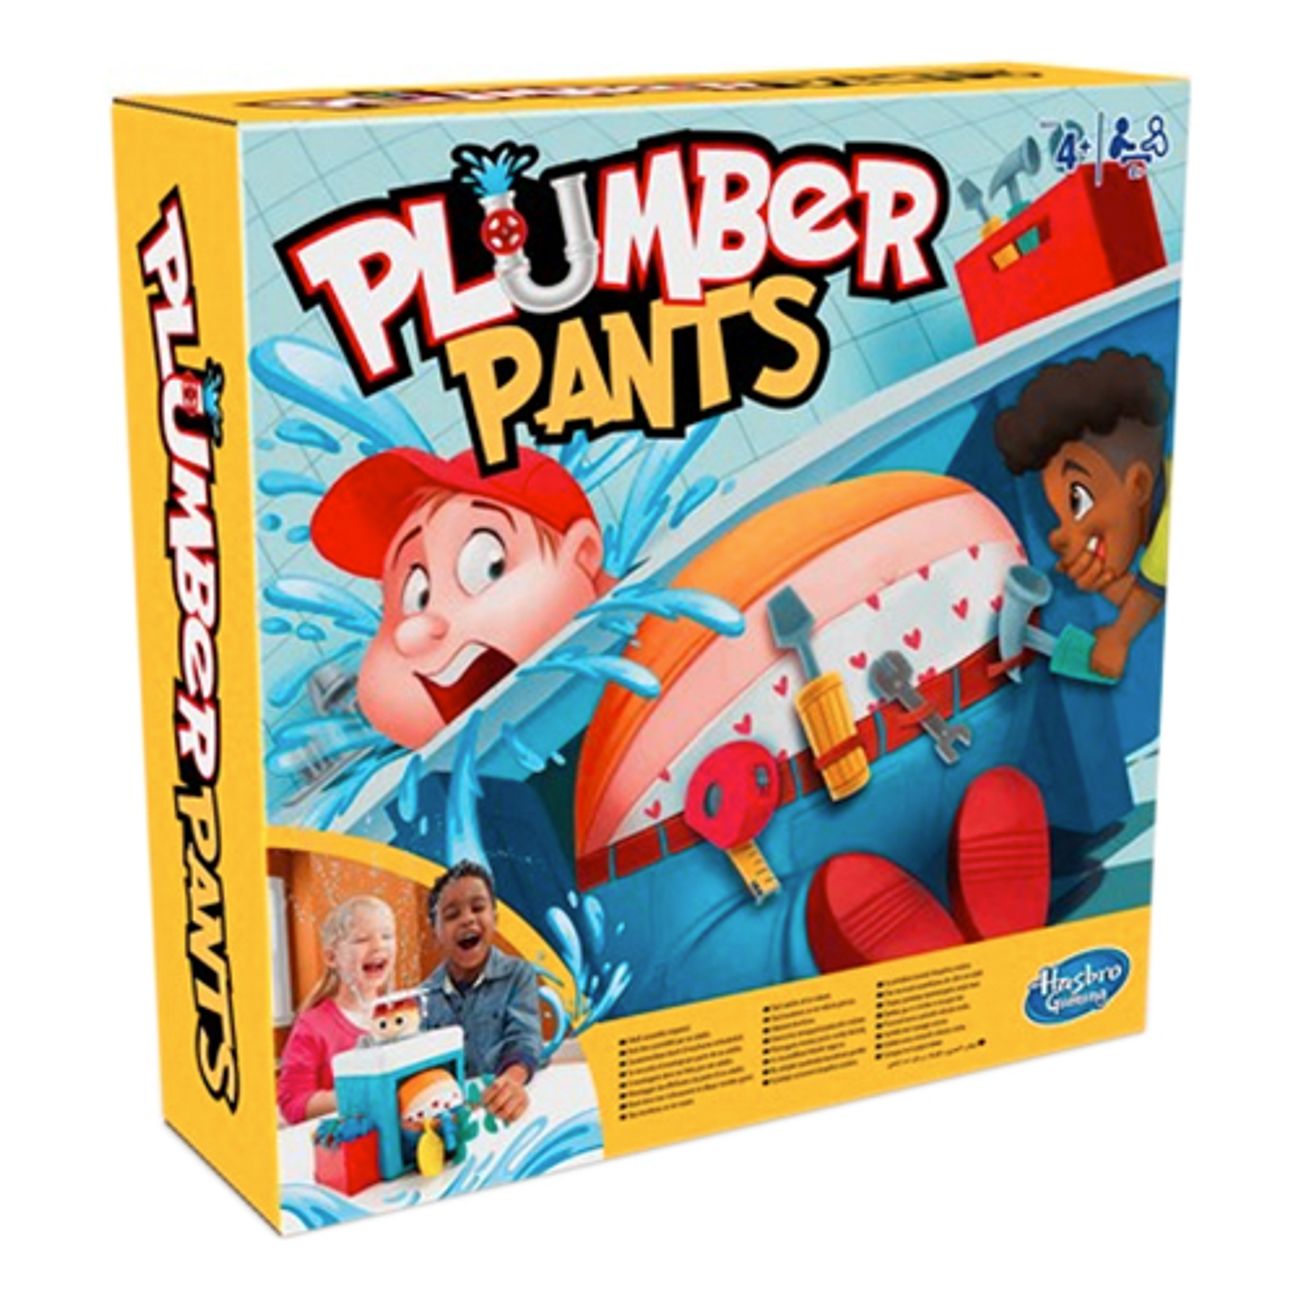 plumber-pants-spel-1